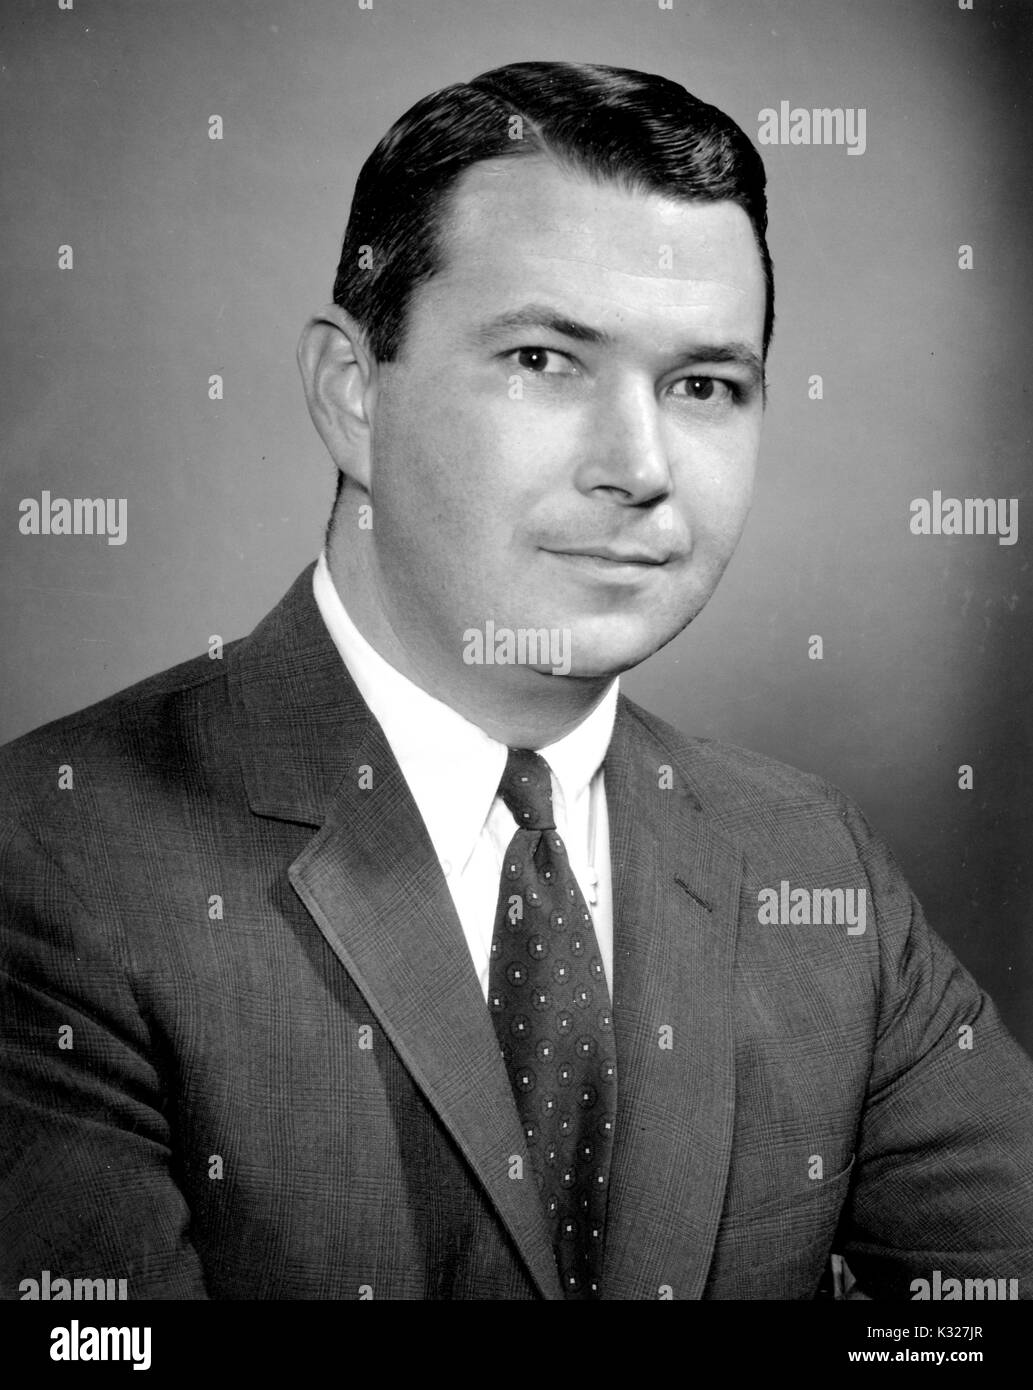 Portrait de la poitrine vers le haut de Winfield Scott Fossé III, développeur, entrepreneur, et de marketing et communication, 1960. Banque D'Images